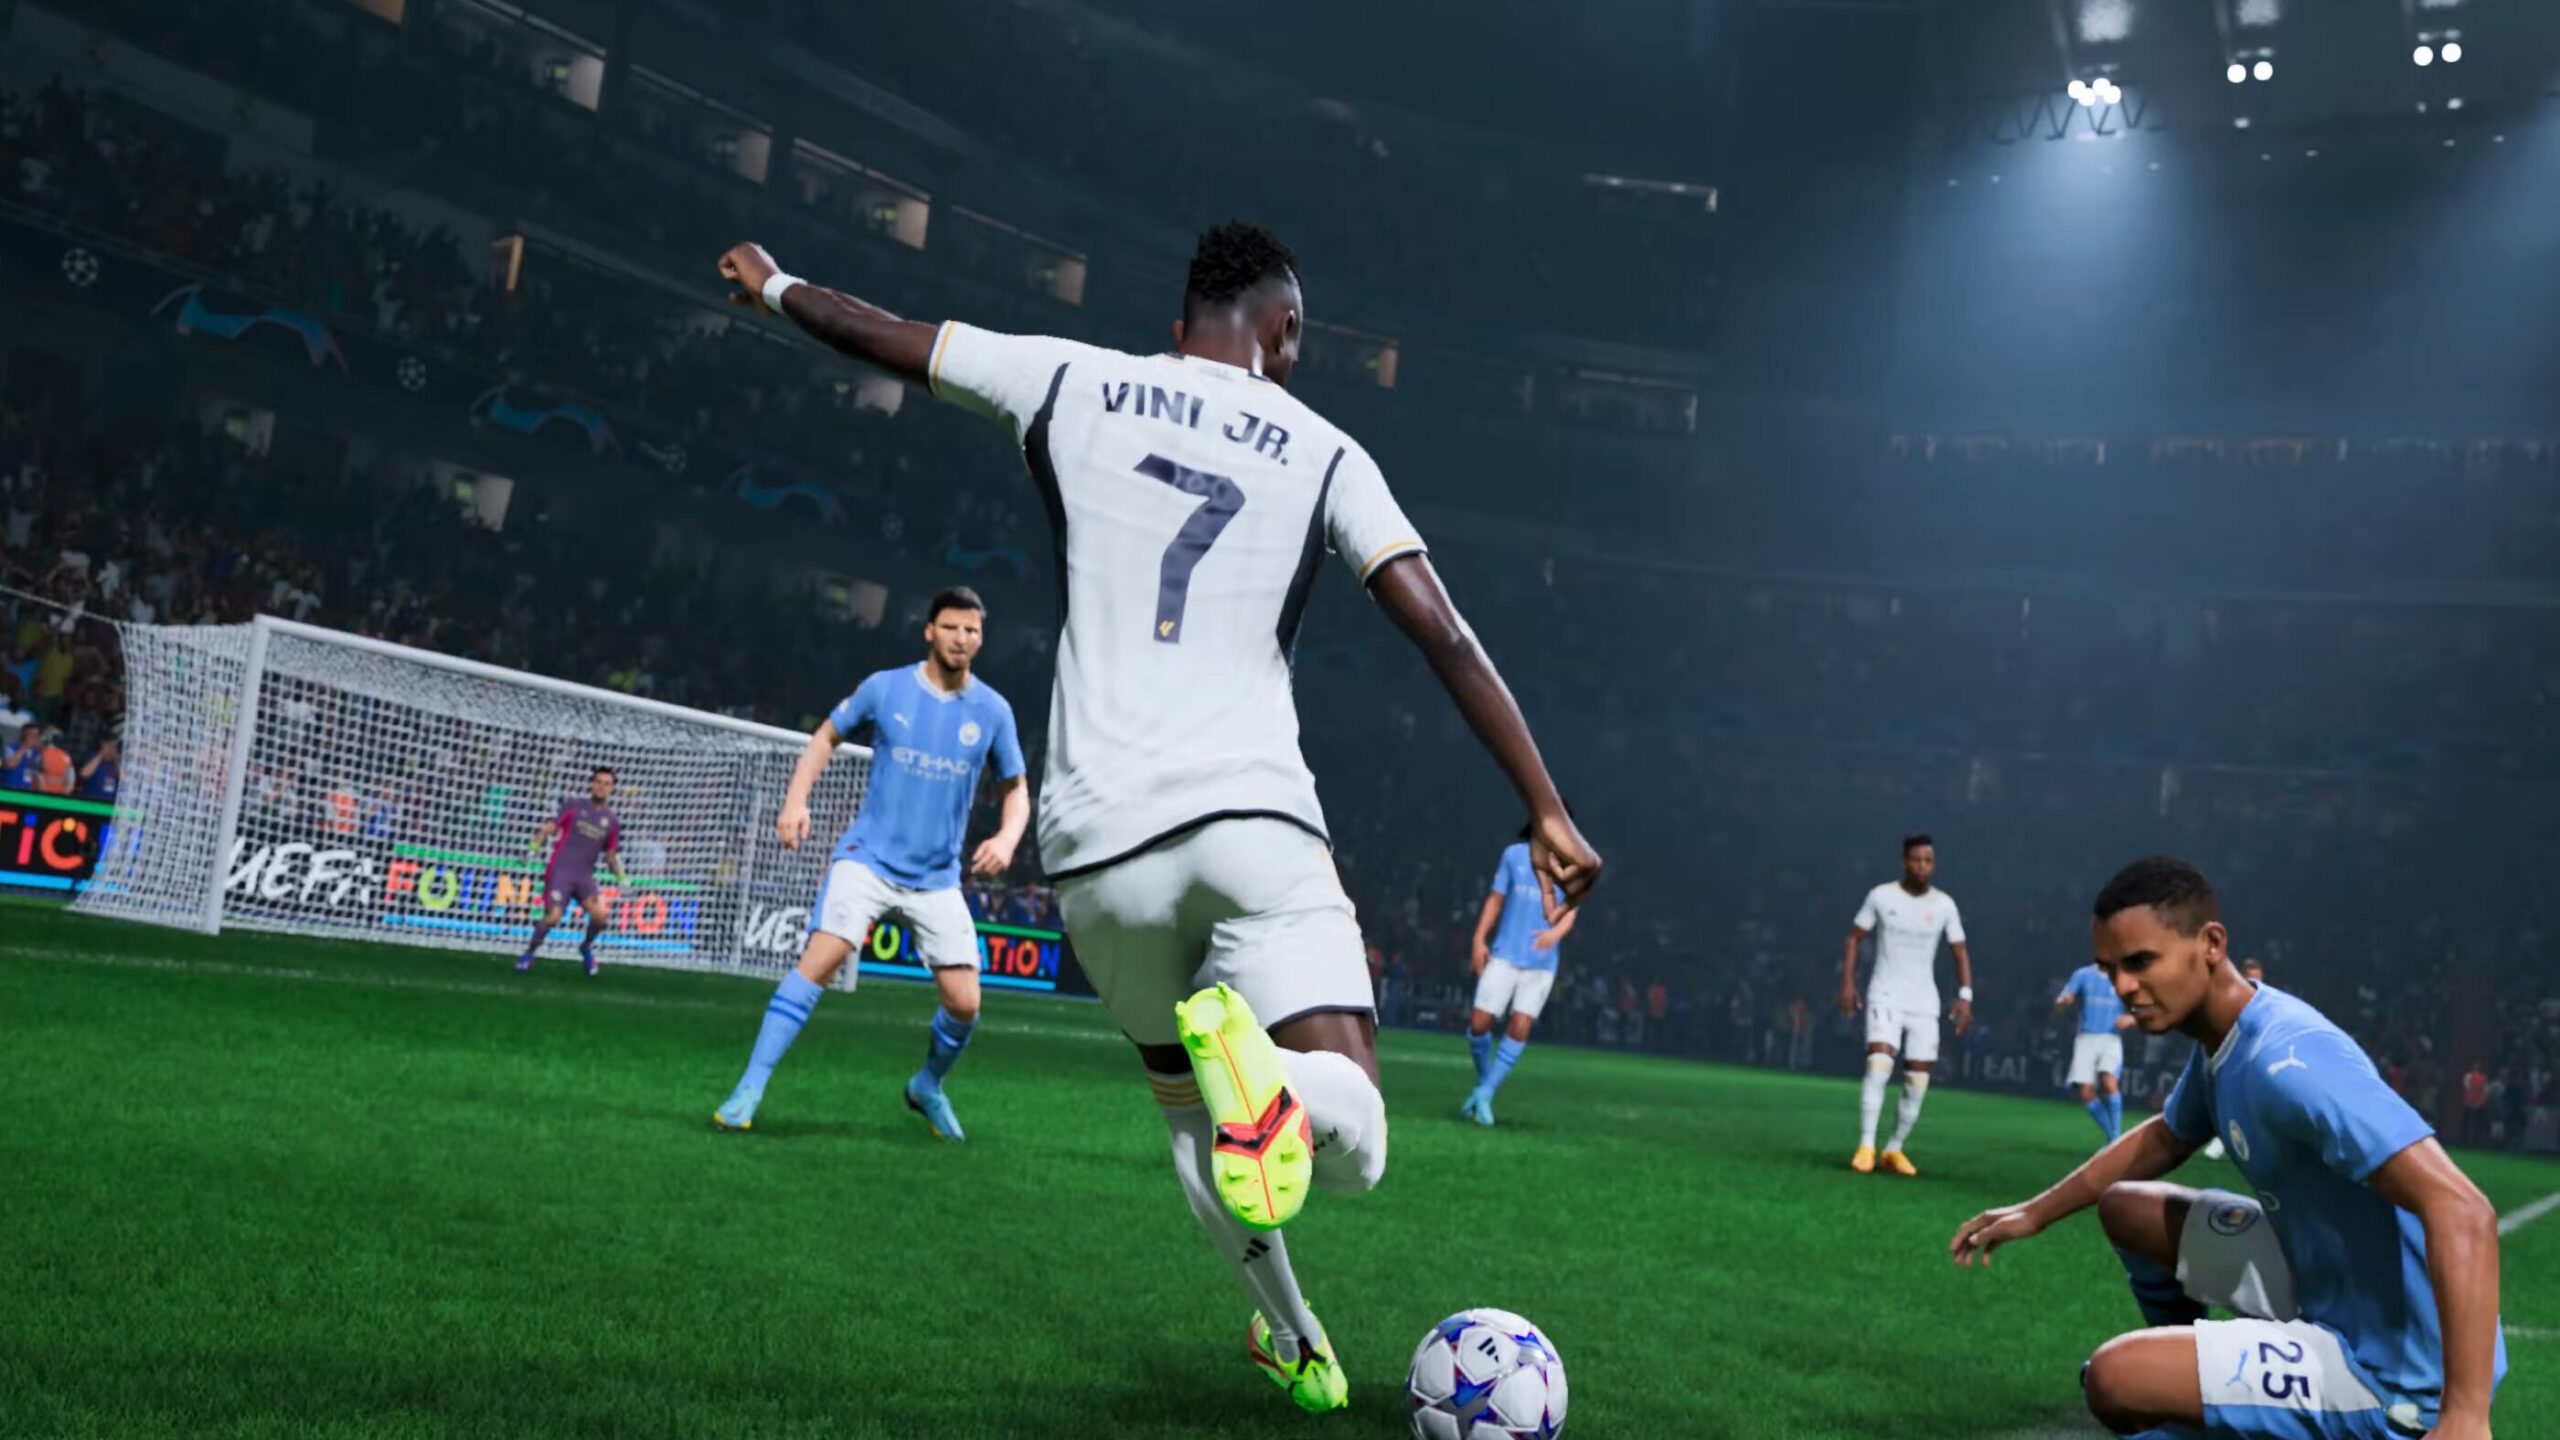 EA Sports FC 24: La próxima generación del fútbol - Ahorra dinero y compara  precios -  - Comparador de precios de videojuegos en clave CD /  CD Key